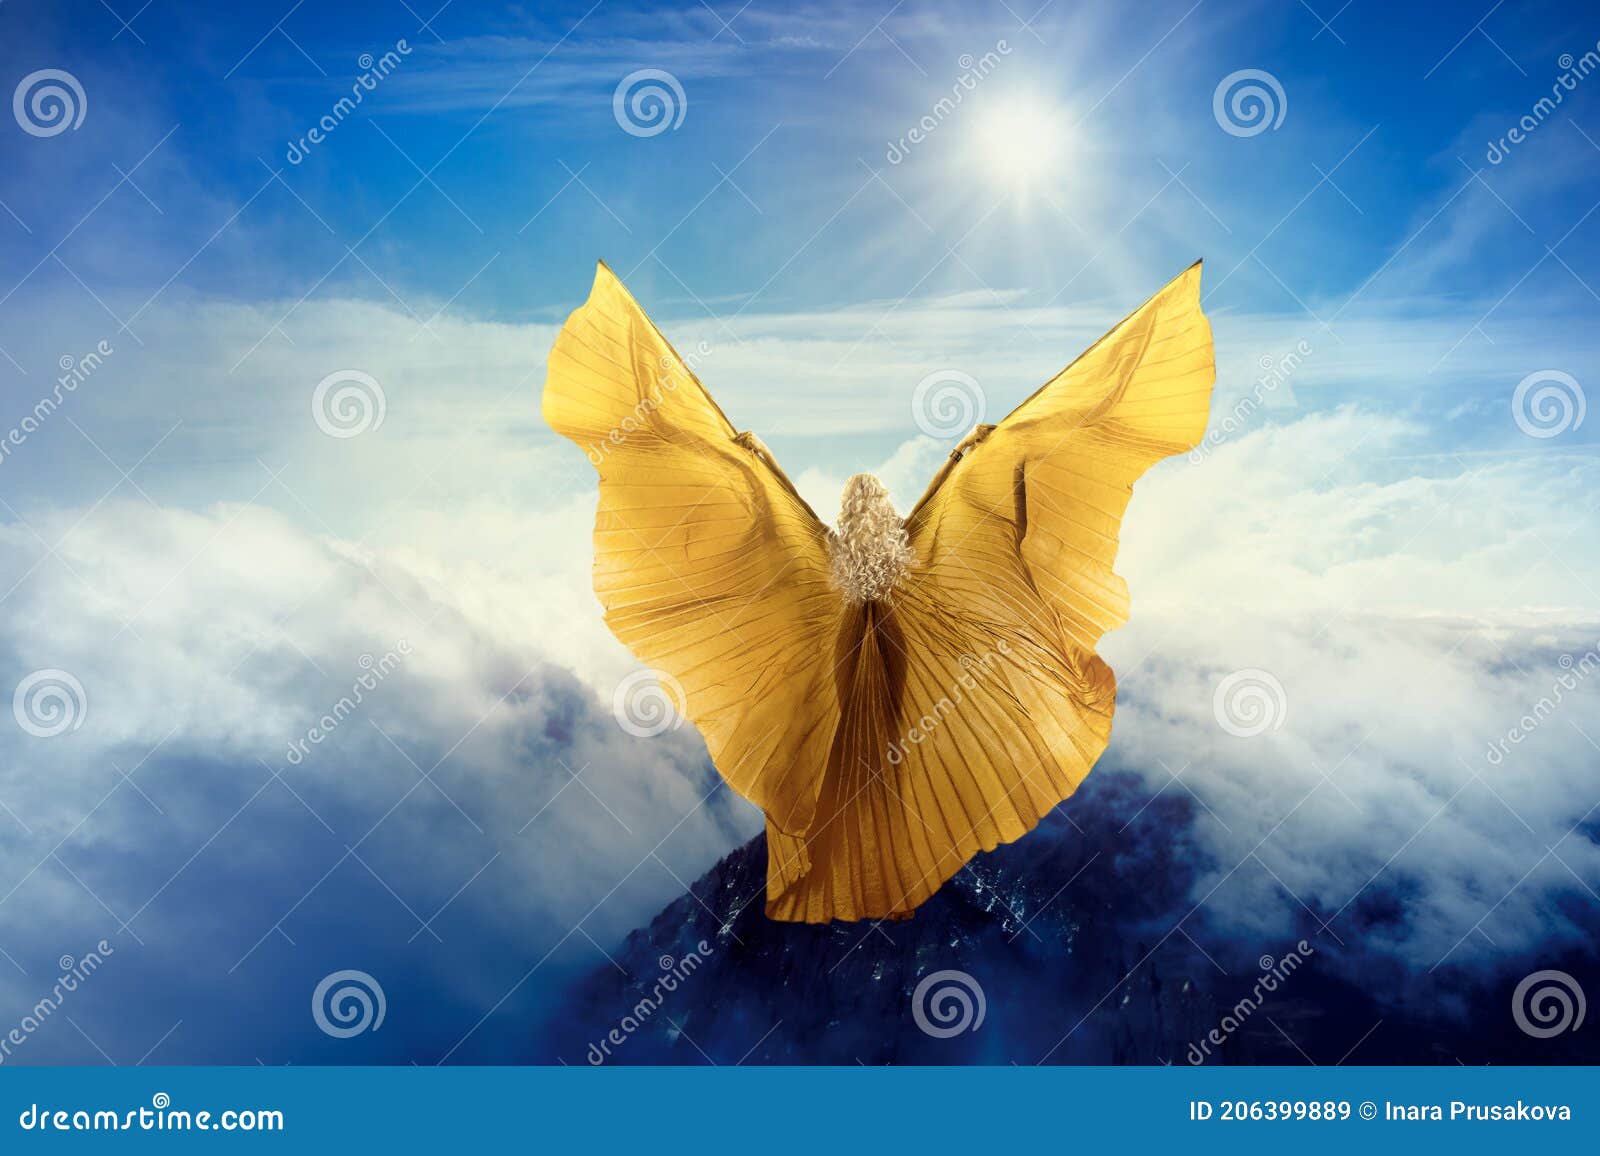 Alas De Mariposa Mujer Volando En Nubes Celestes Muchacha Parada En La Cima  De La Montaña En Vuelo Al Sol Imagen de archivo - Imagen de hada, humano:  206399889